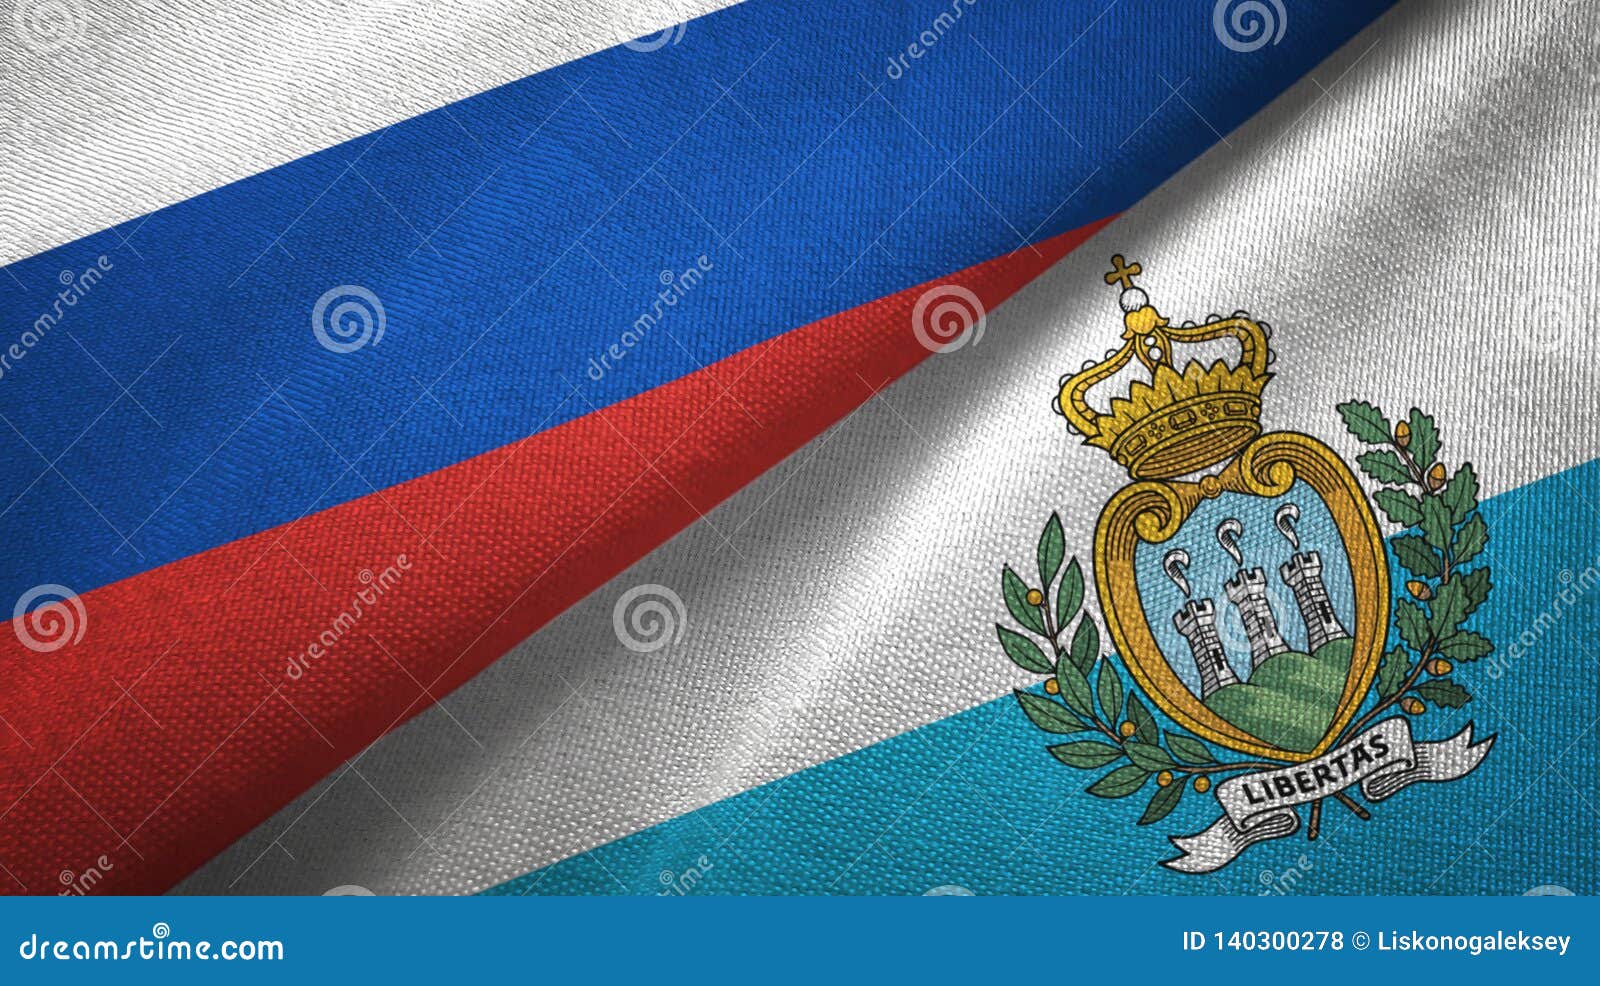 Флаг сан марино. Флаг Сан Марино 1812. Сан Марино флаг 1914. Флаг Сан Марино фото.